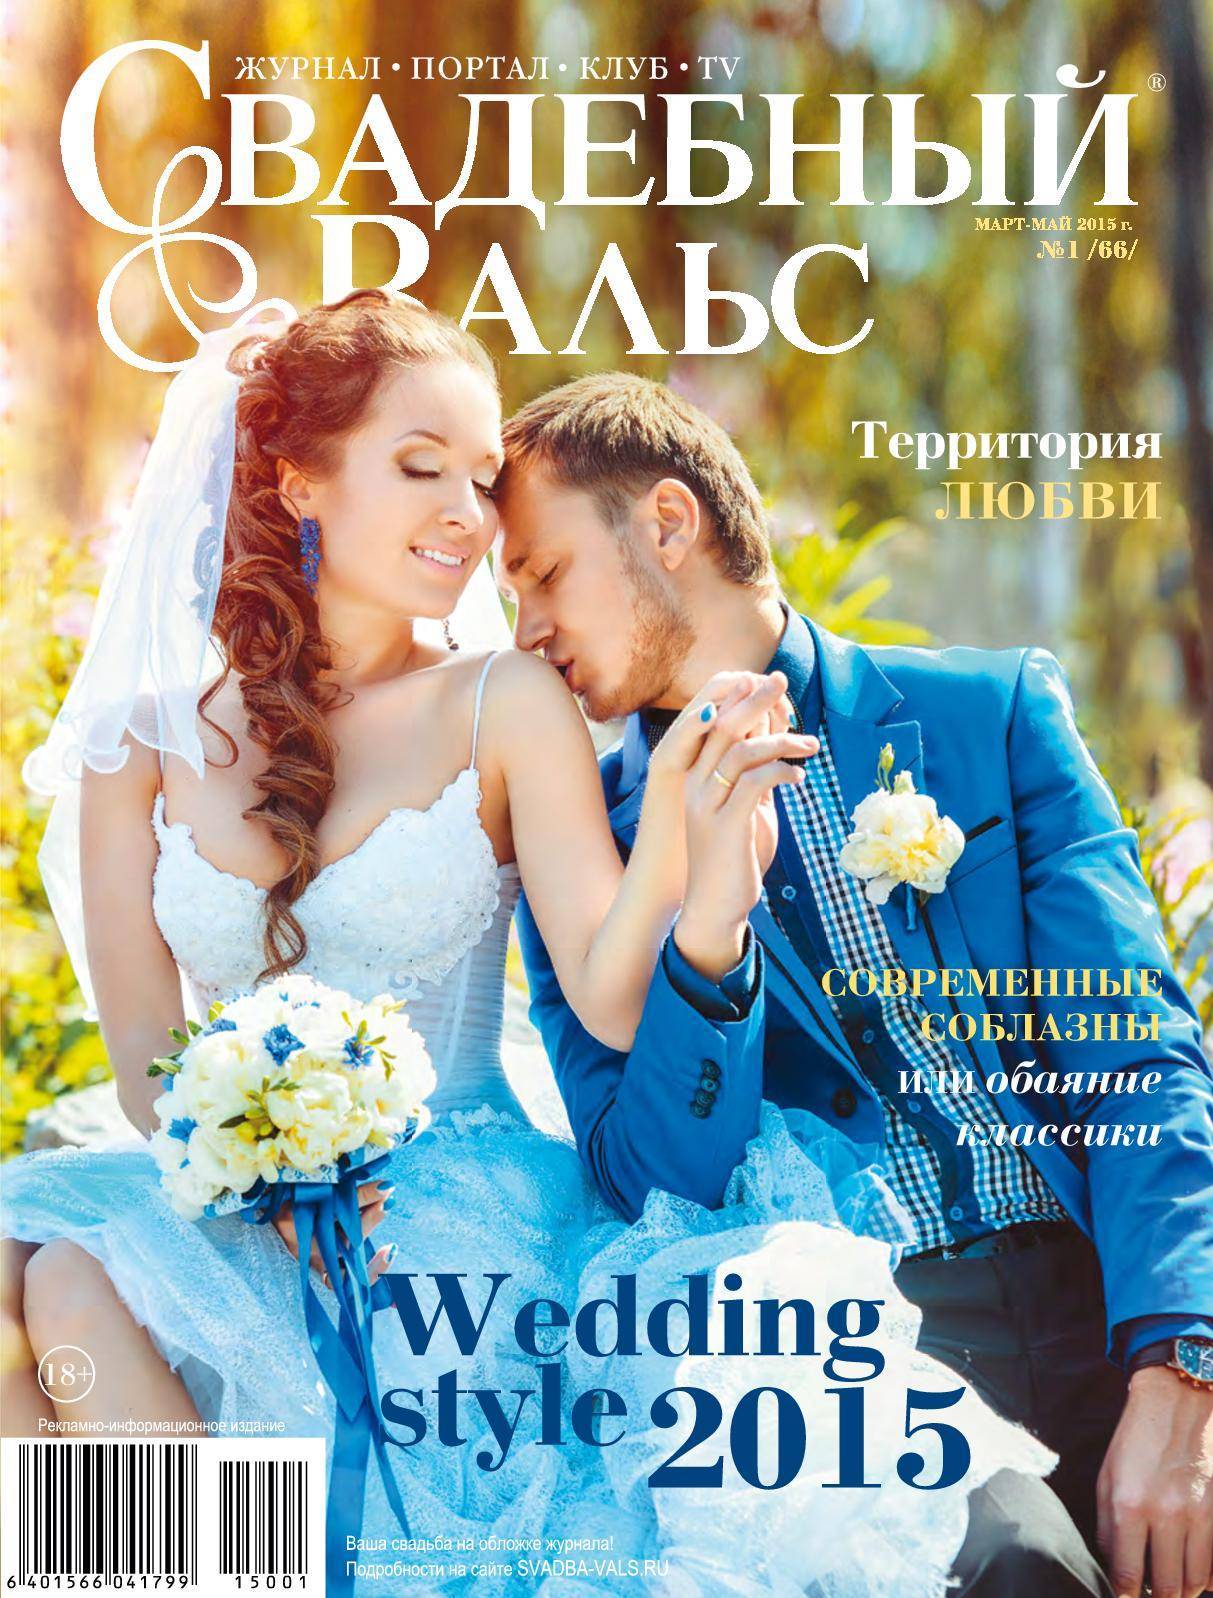 Кто за что платит на свадьбе в россии